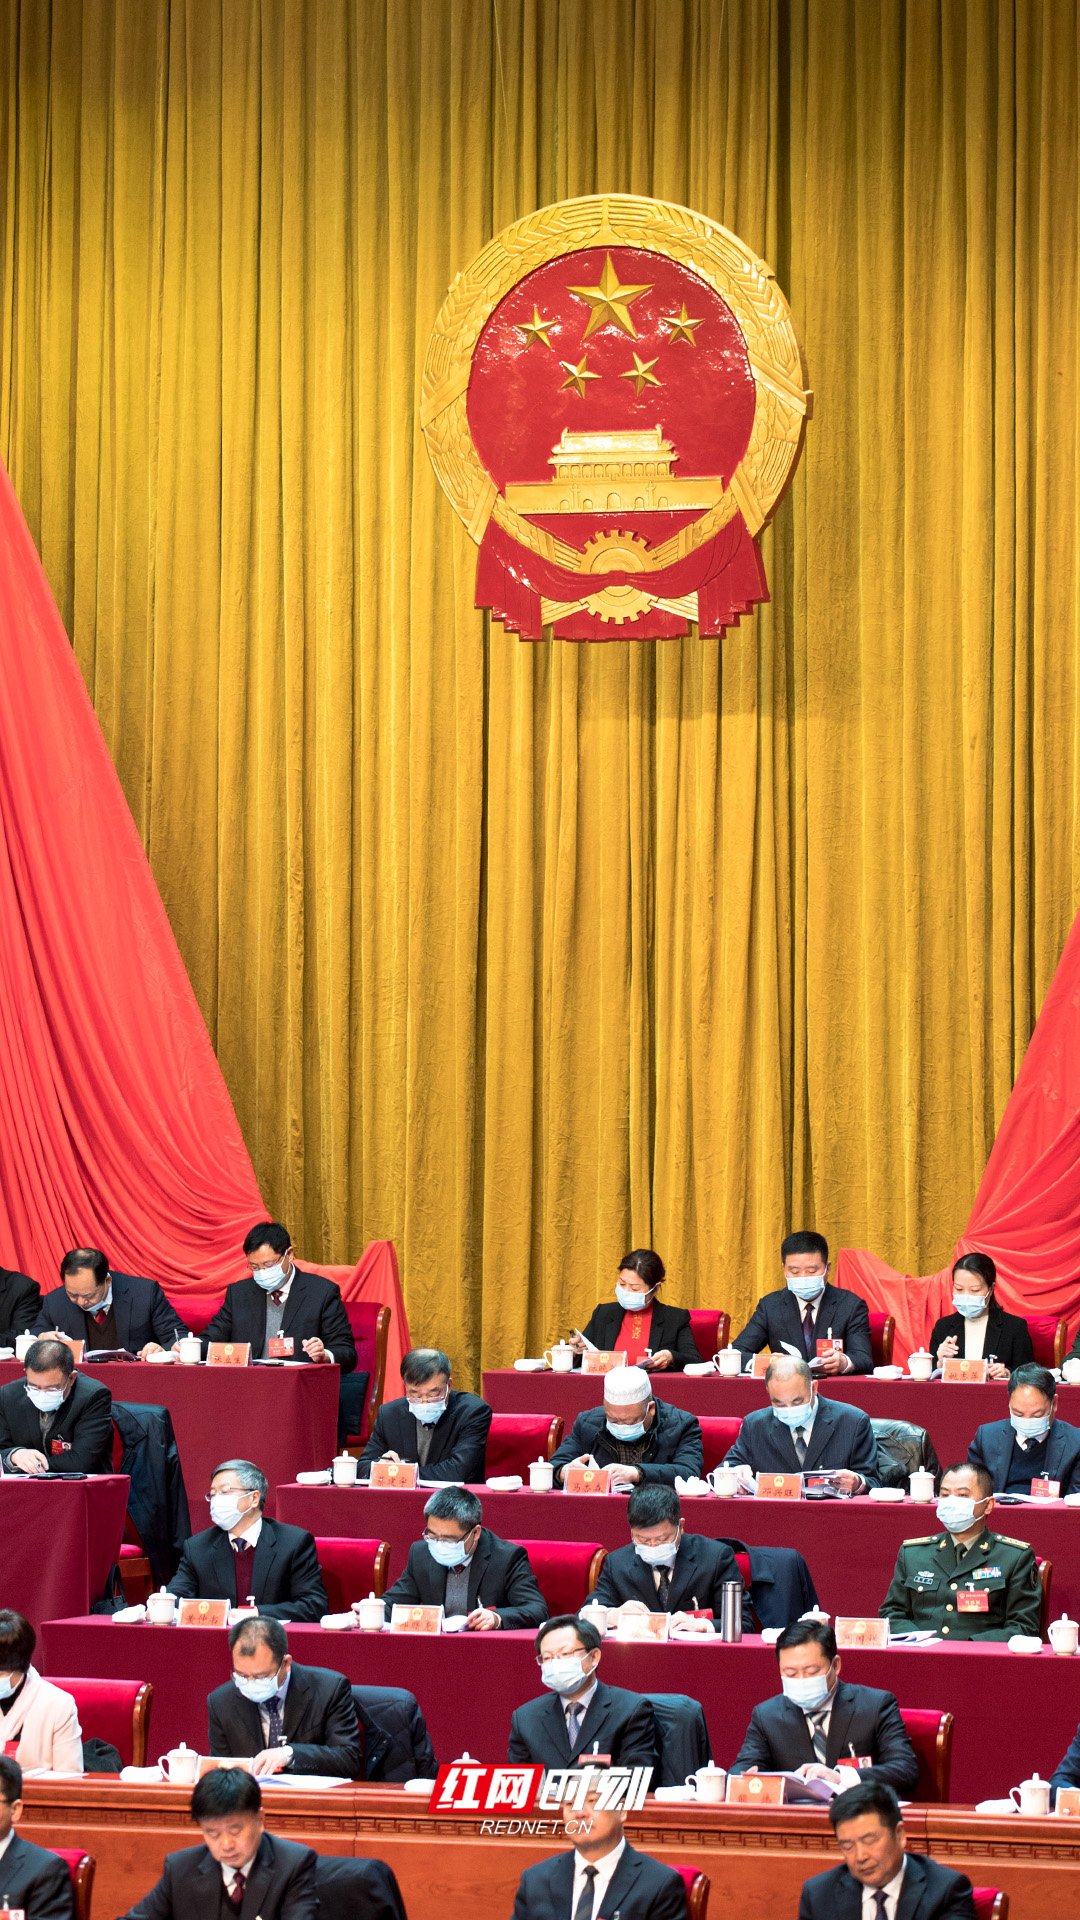 主席团正中央悬挂中华人民共和国国徽。